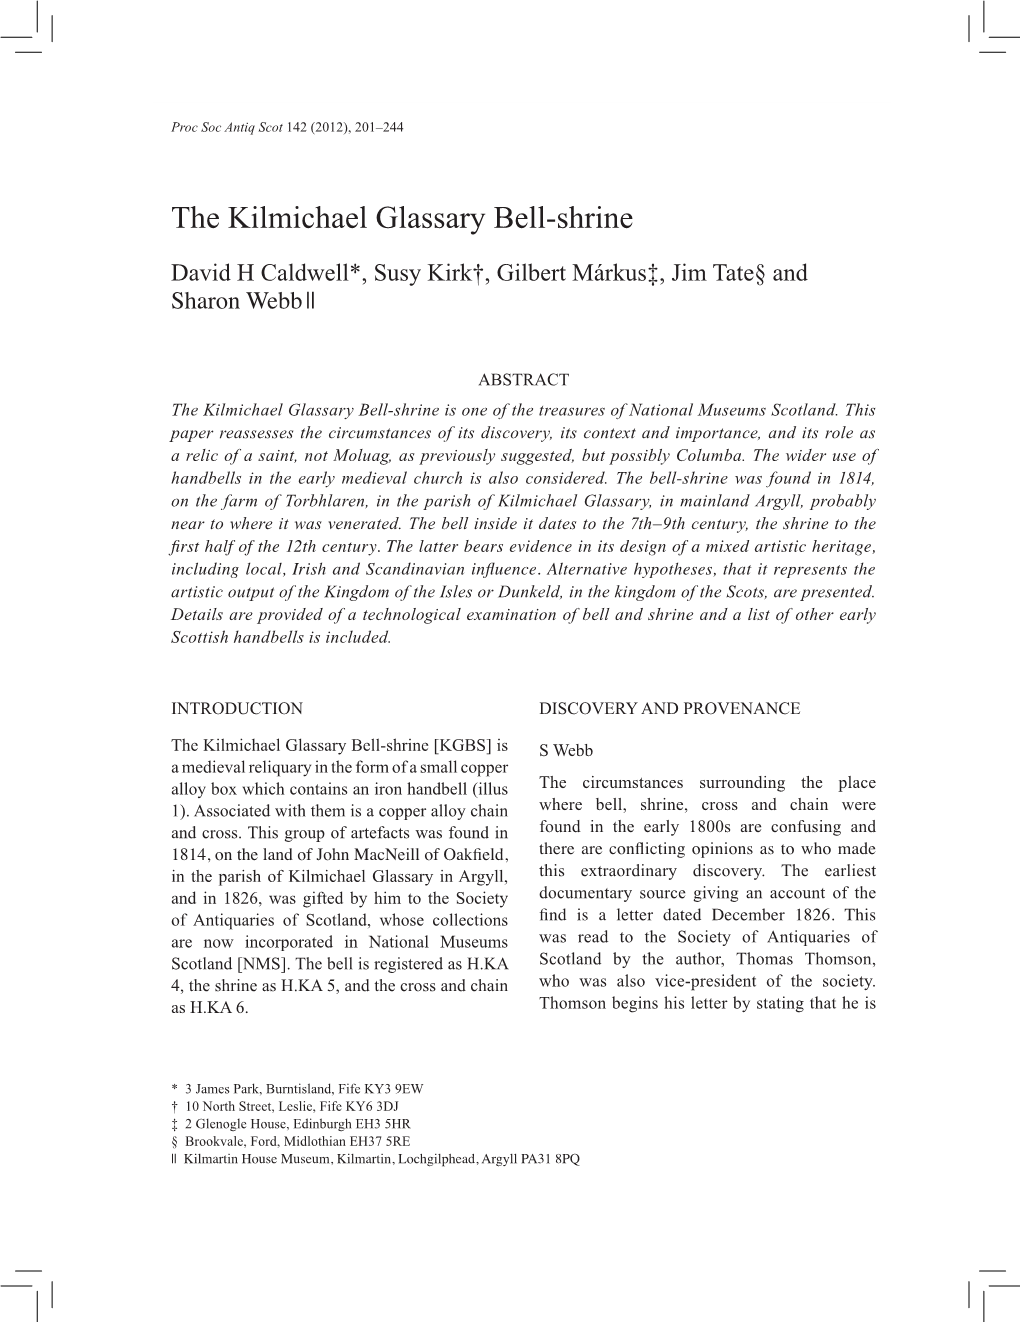 The Kilmichael Glassary Bell-Shrine | 201